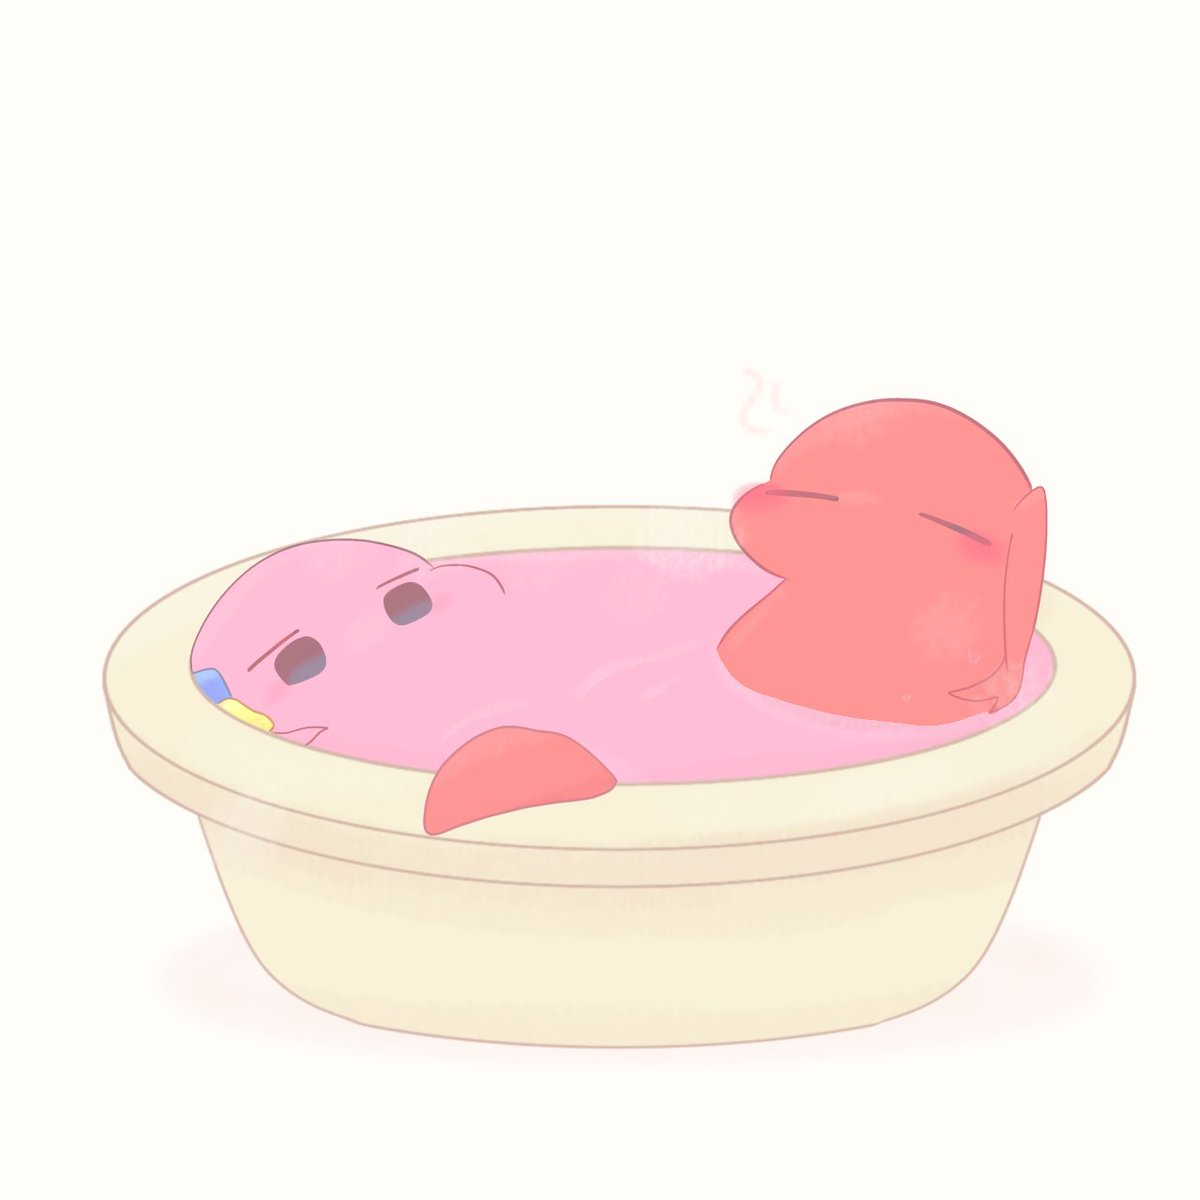 後藤ひとり 「お題箱より 溶けぼちノコ風呂に入る喜多ノコちゃん! 」|ふれふのイラスト